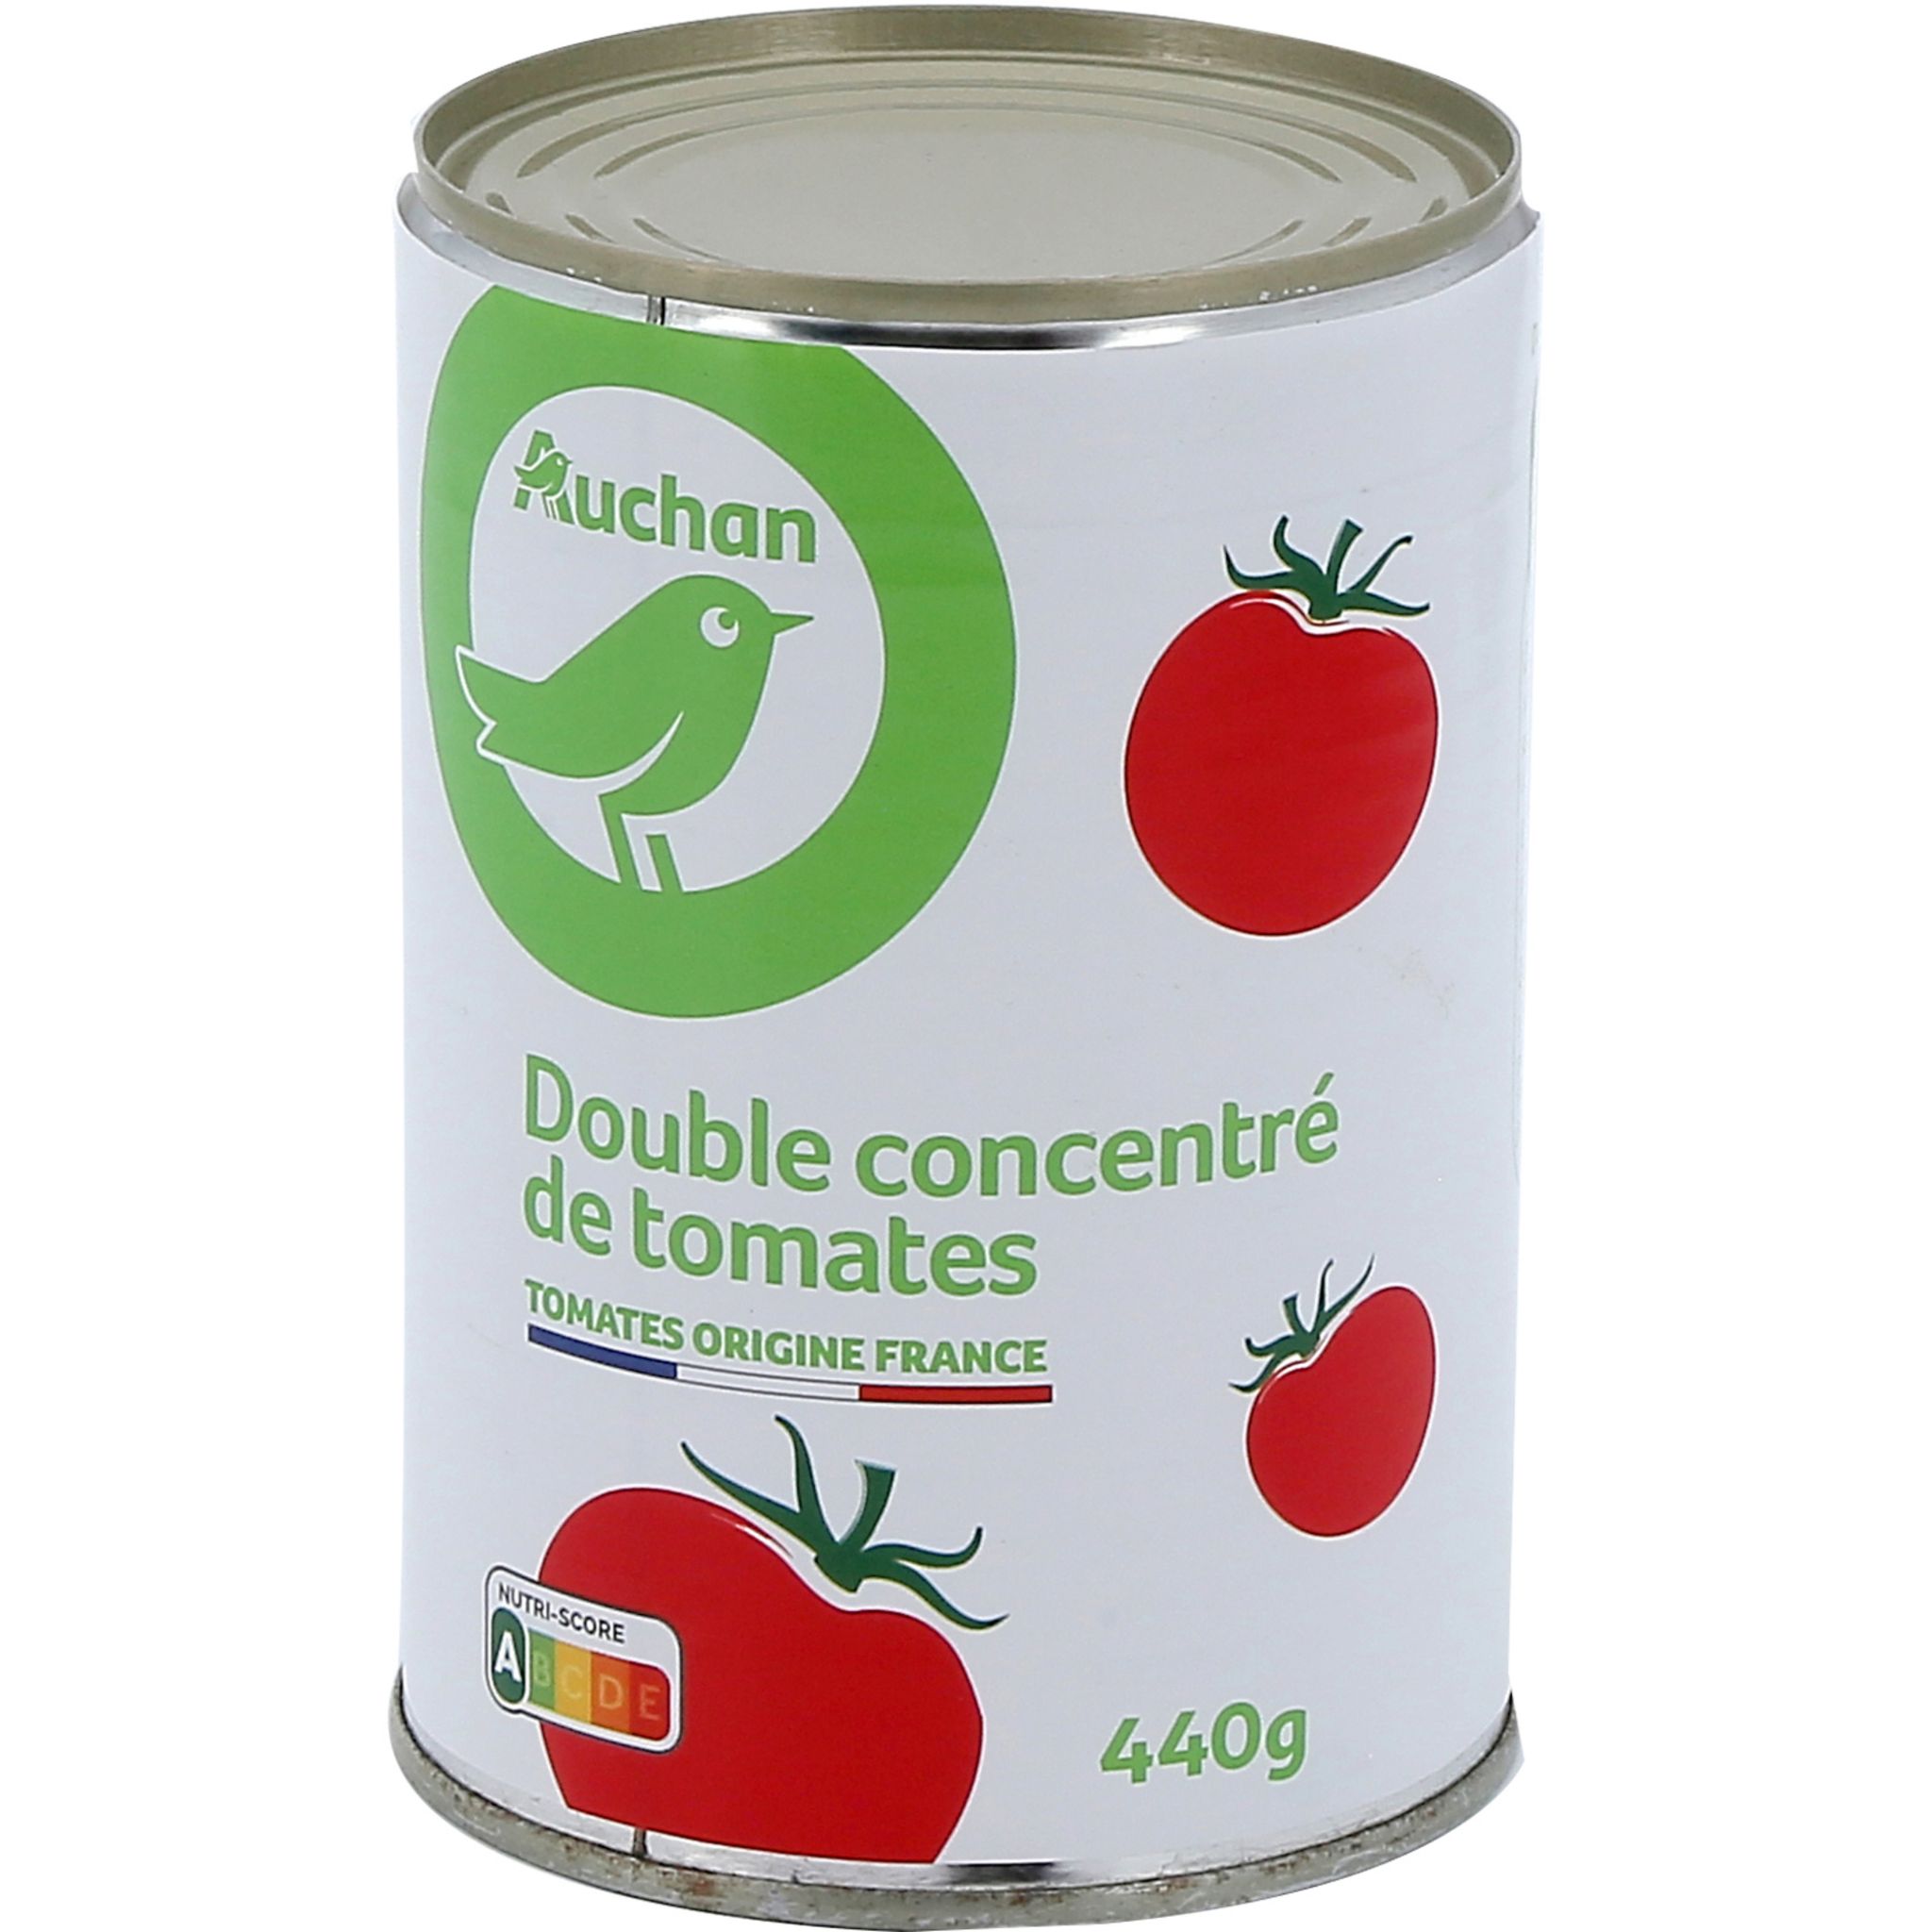 Double Concentré De Tomates (€co+)